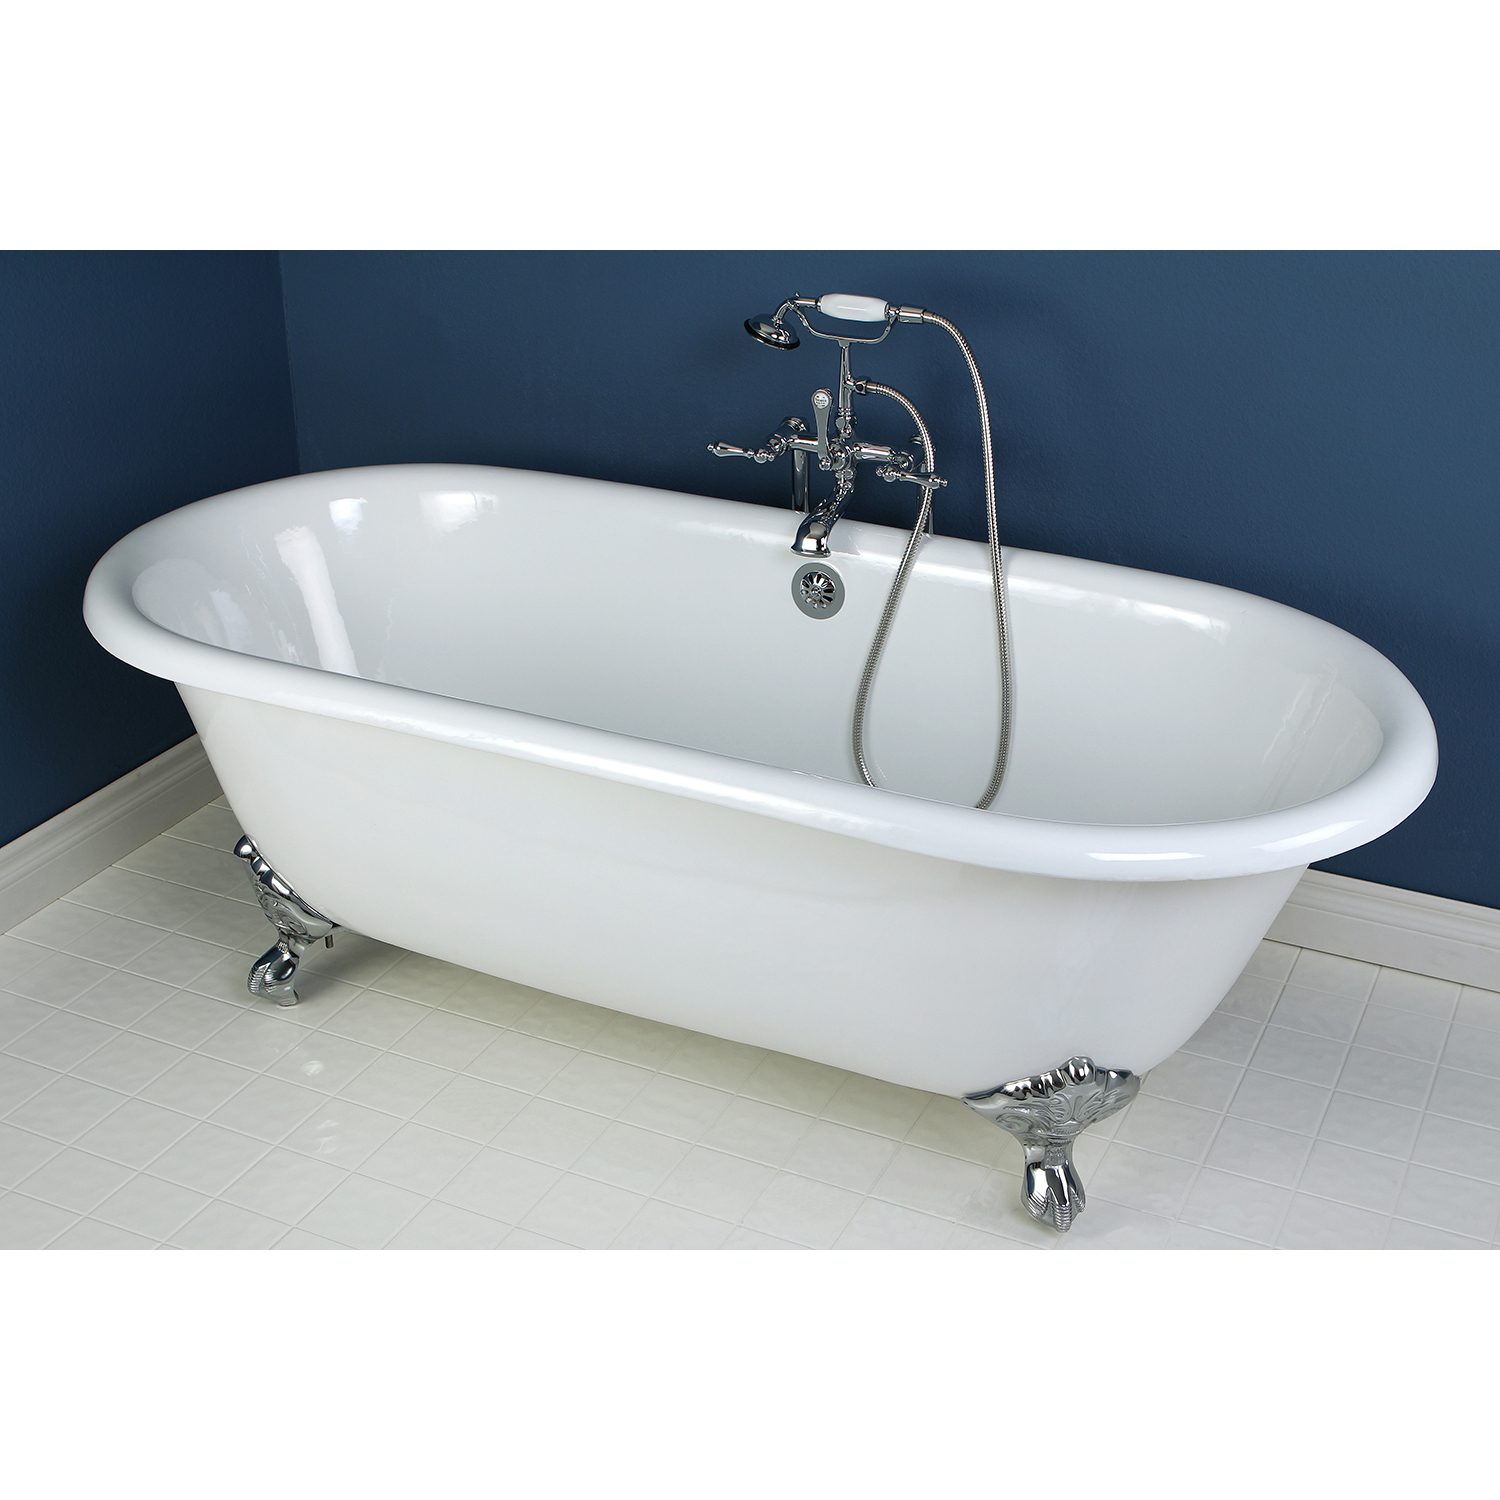 Clawfoot Bath Tub With Chrome Feet, 66 Inch Bathtub Surround